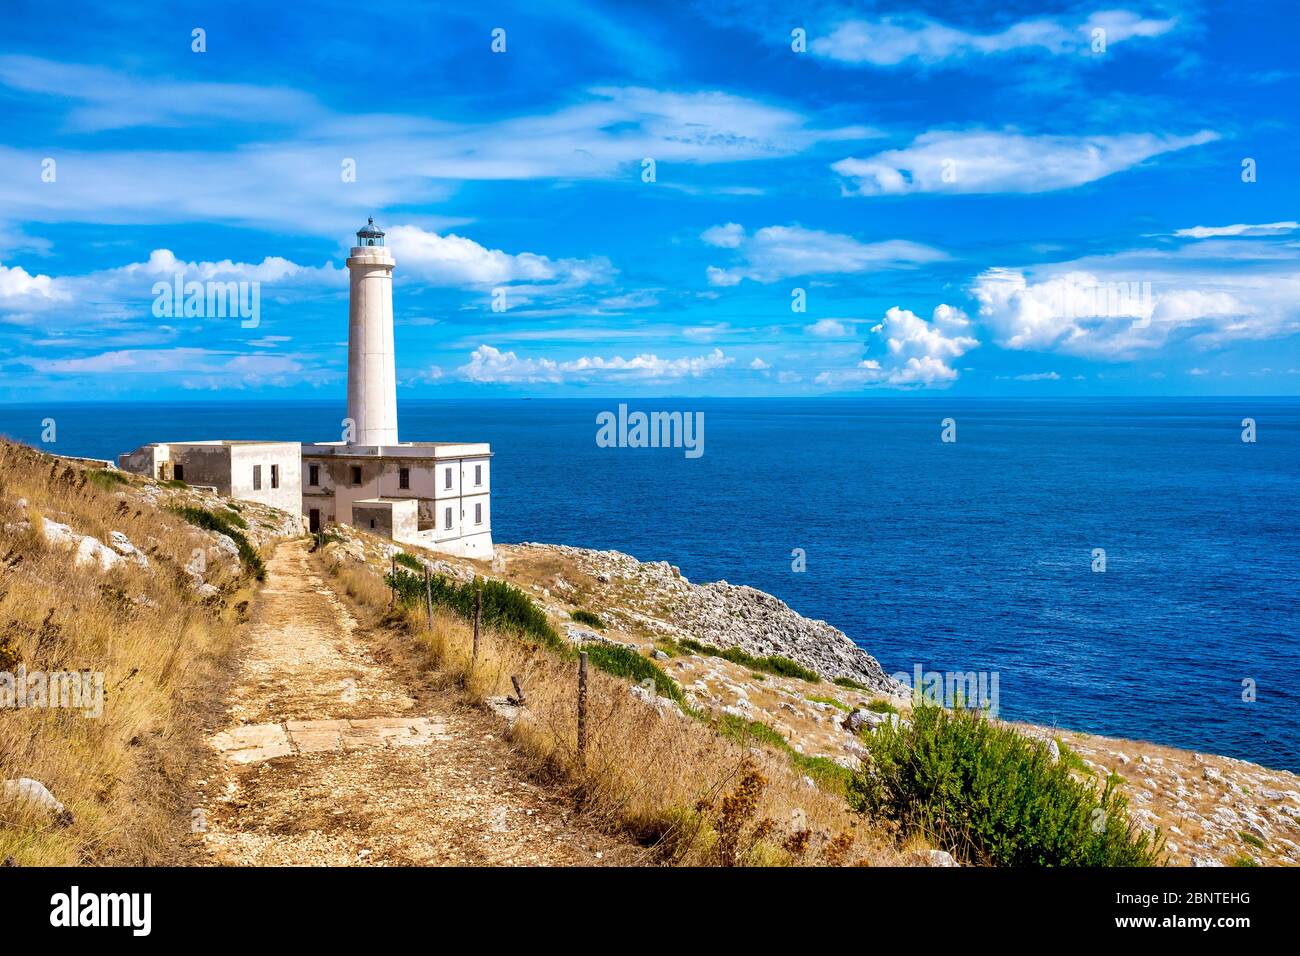 Lighthouse of Capo d'Otranto, Otranto, Italy Stock Photo